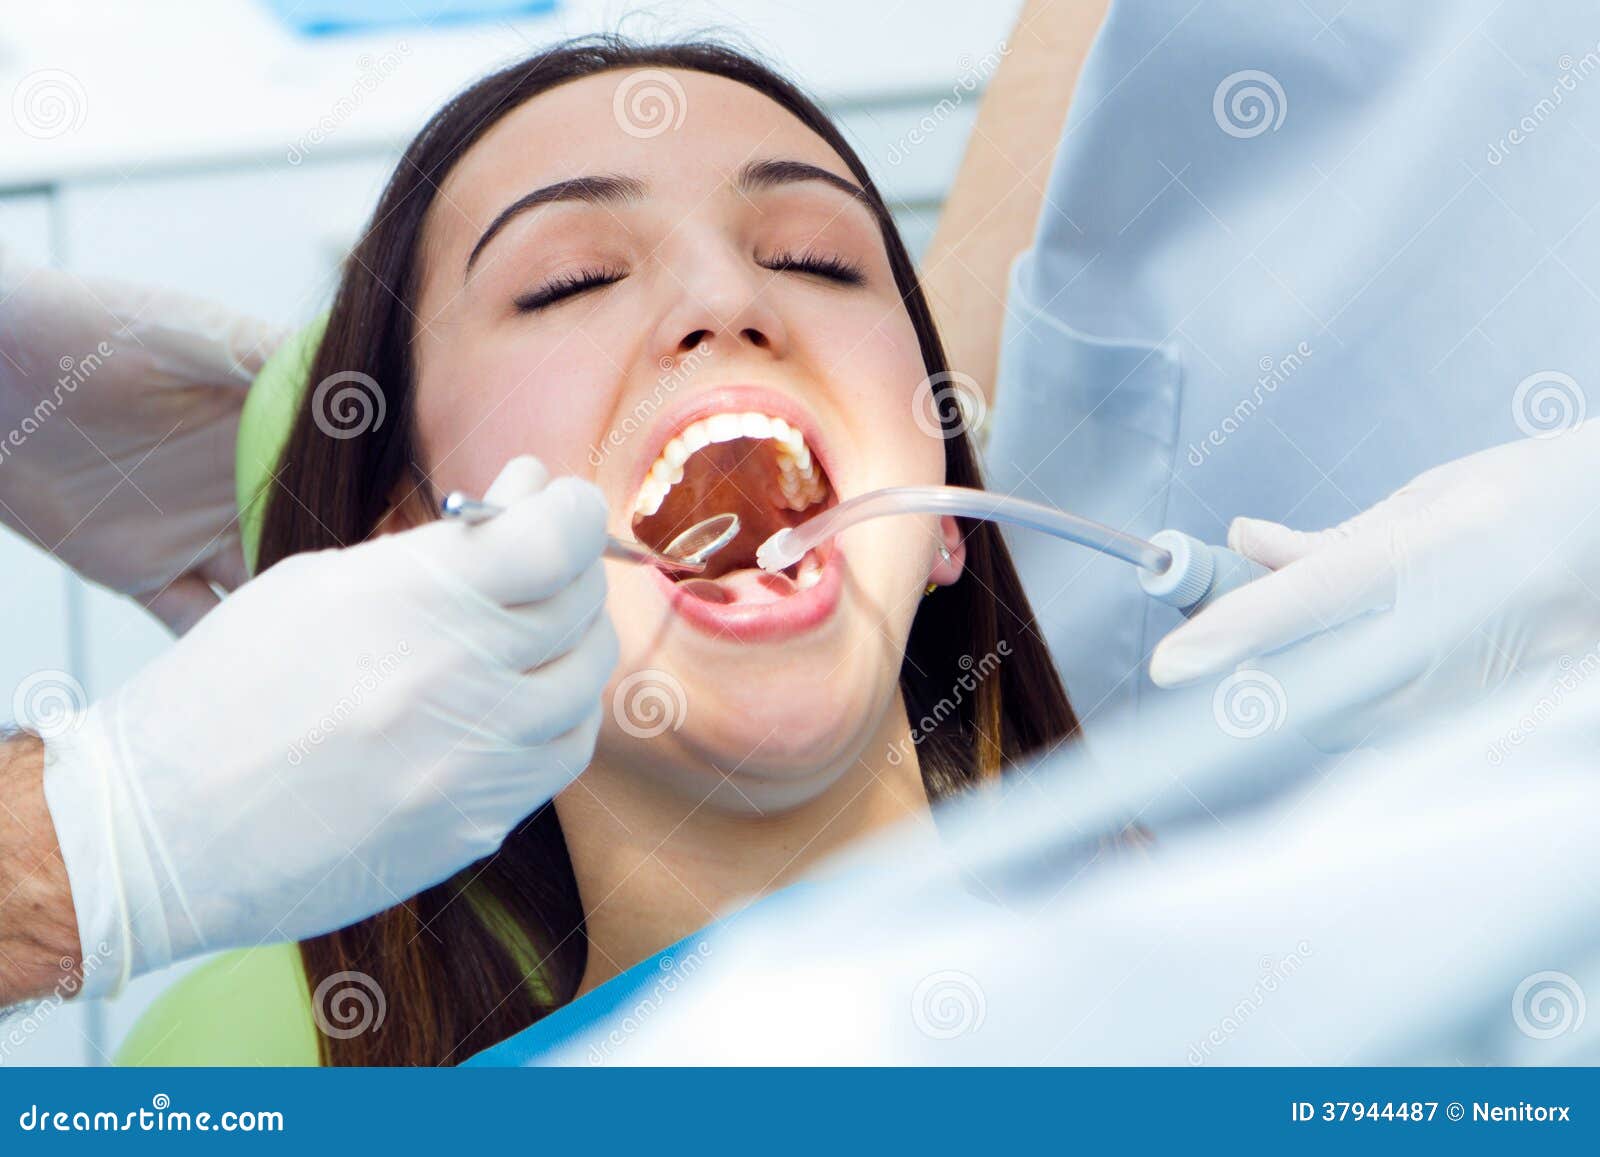 Глоток открыто. Открытый рот у стоматолога. Девочка у стоматолога. У стоматолога с открытым ртом.